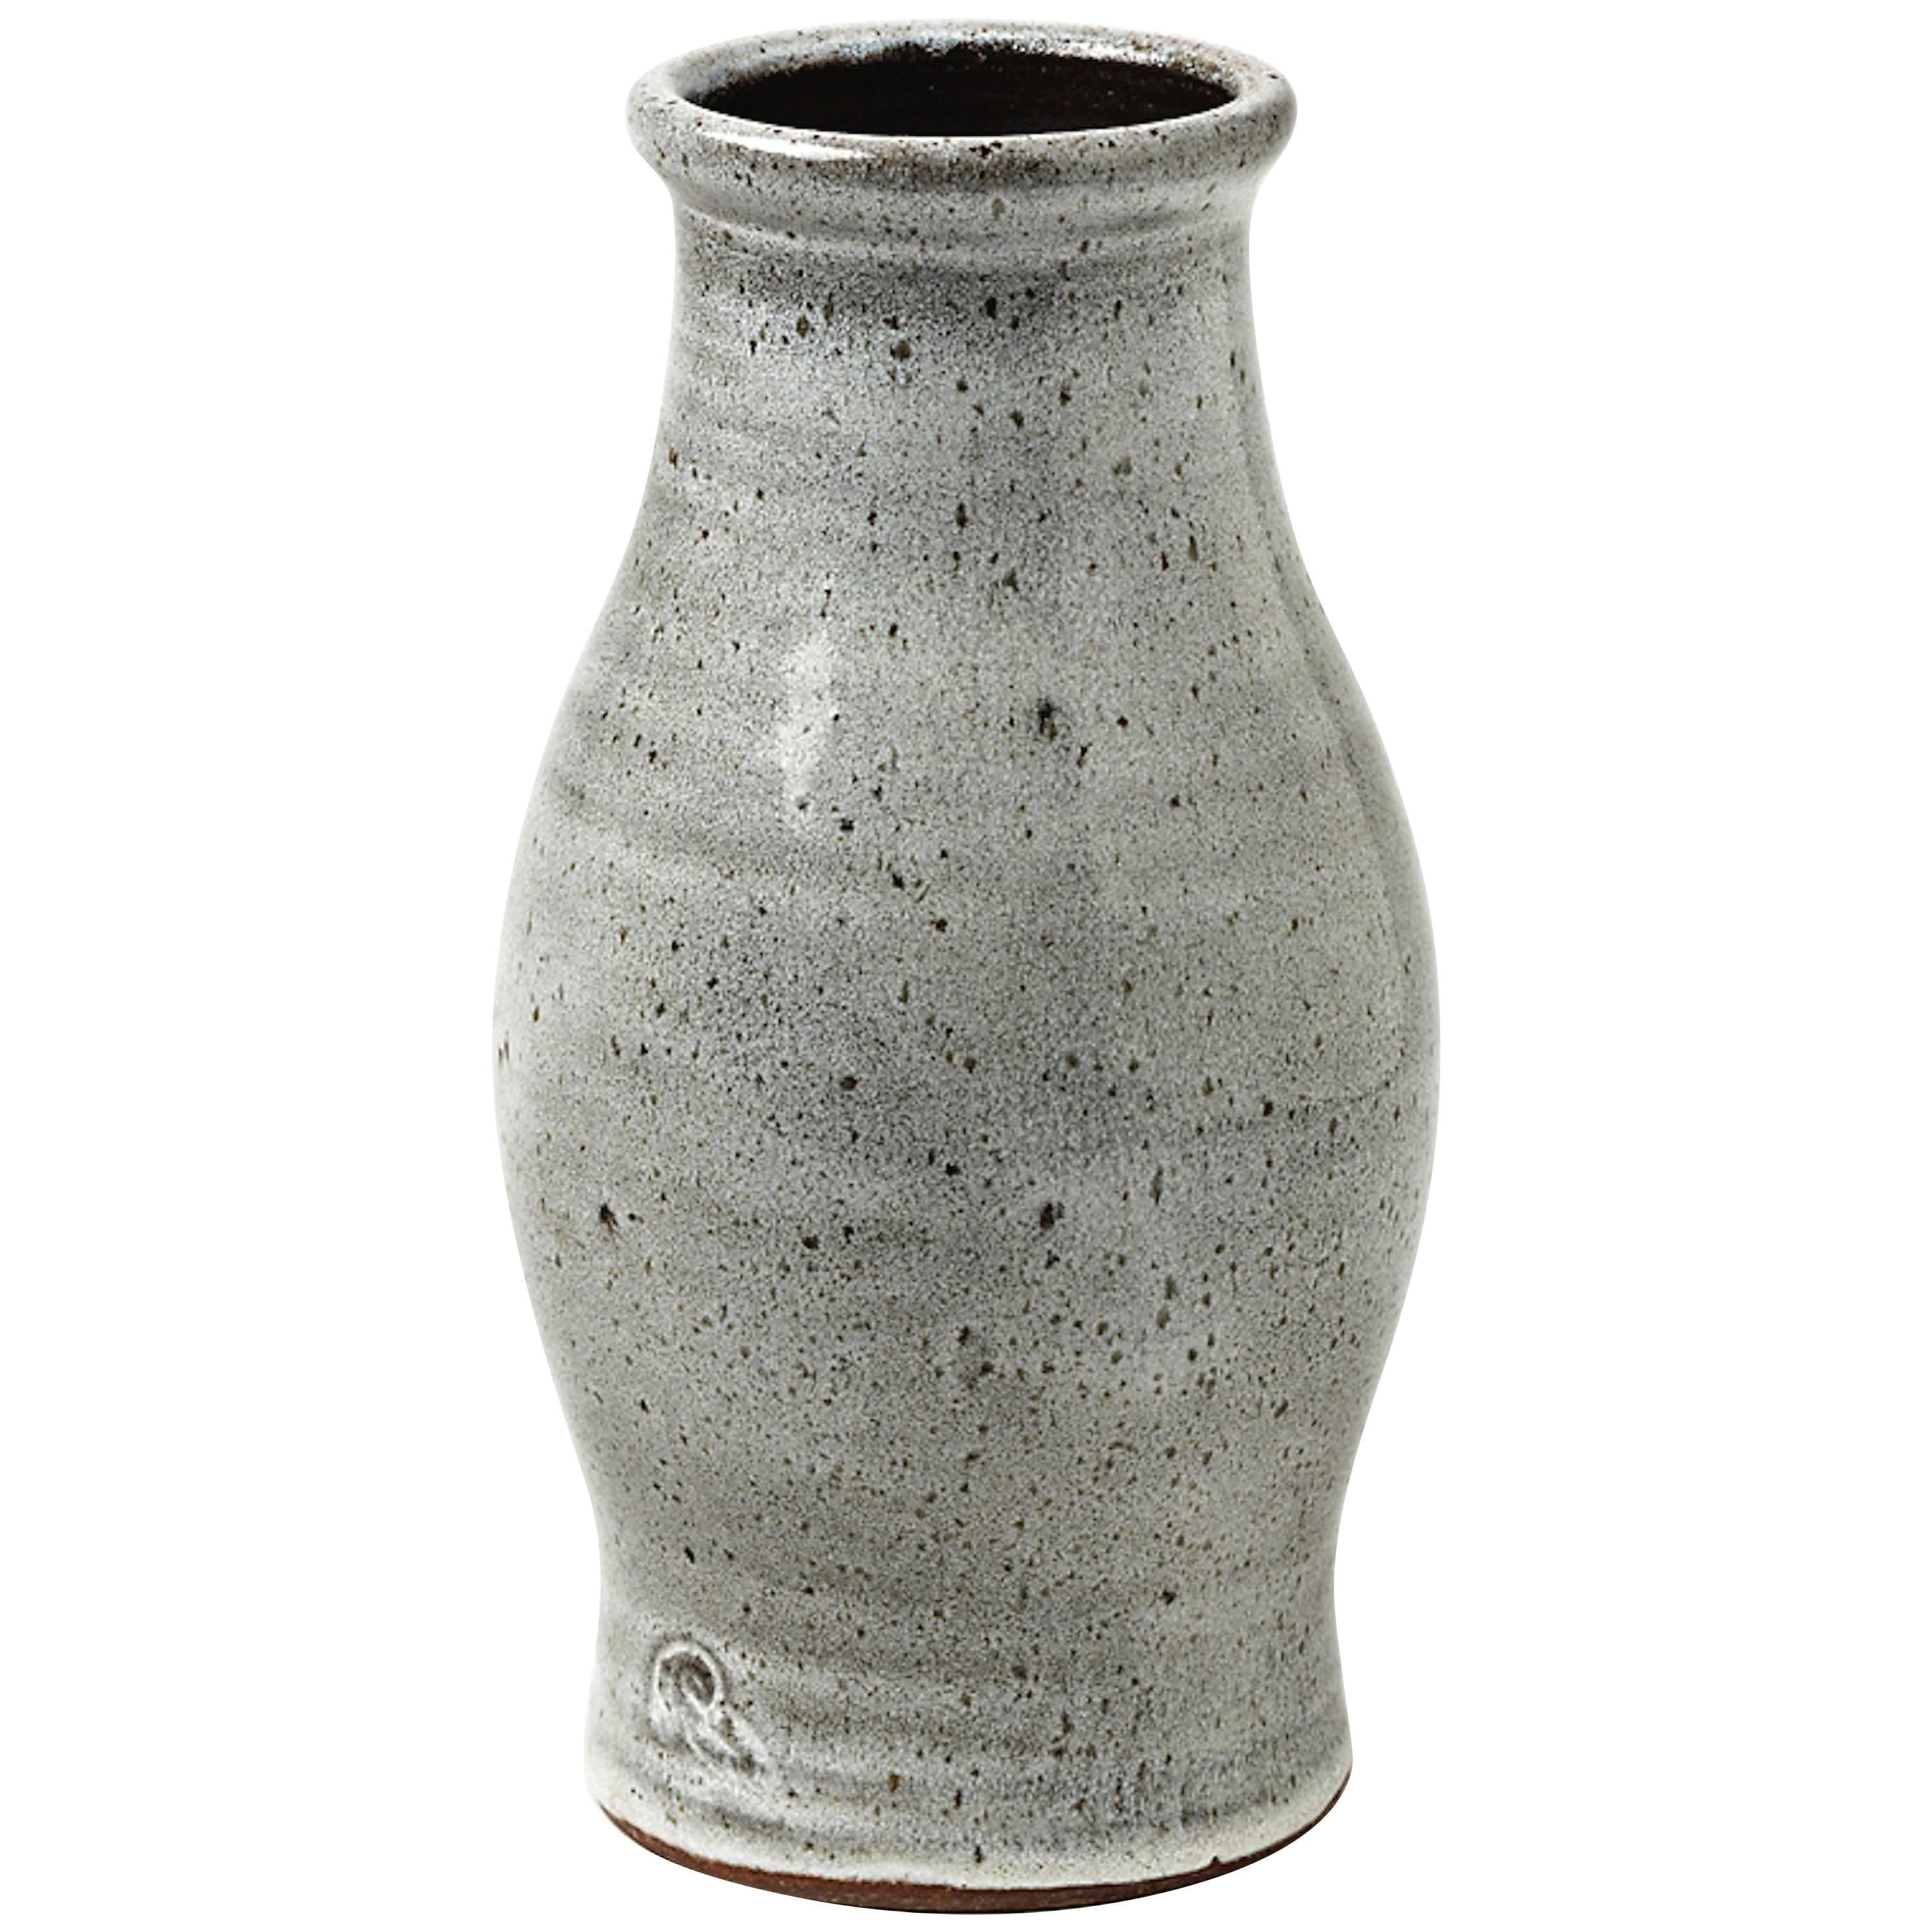 Vase en grès de l'atelier Pierlot, Ratilly, France, 1970-1980